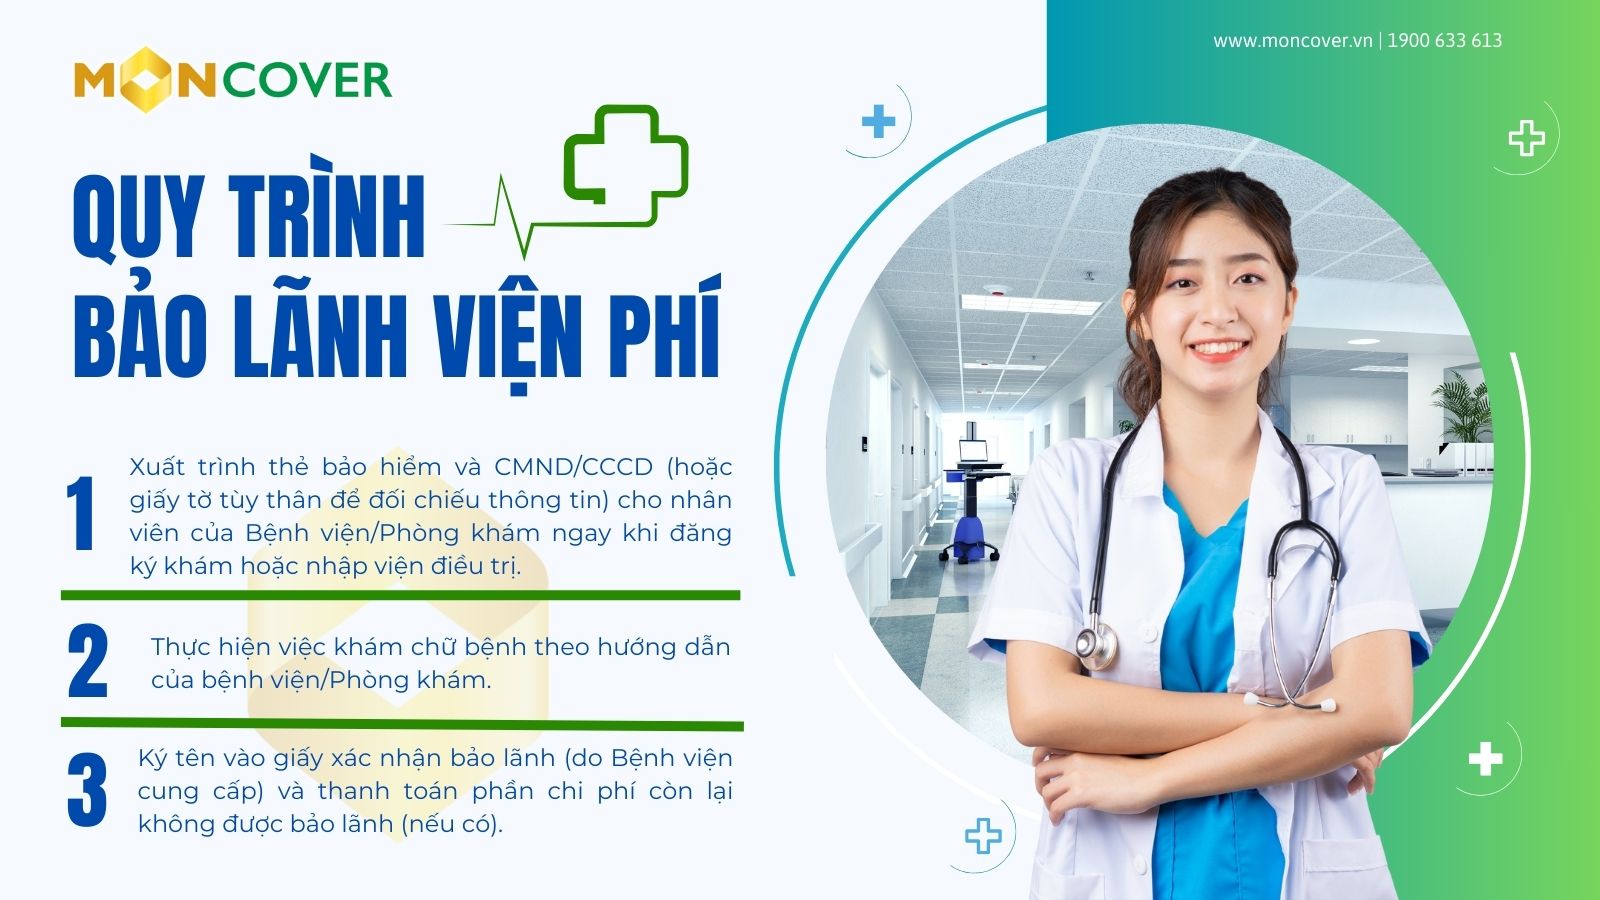 Quyền lợi bảo lãnh viện phí tại Bệnh viện Đại Học Y Hà Nội